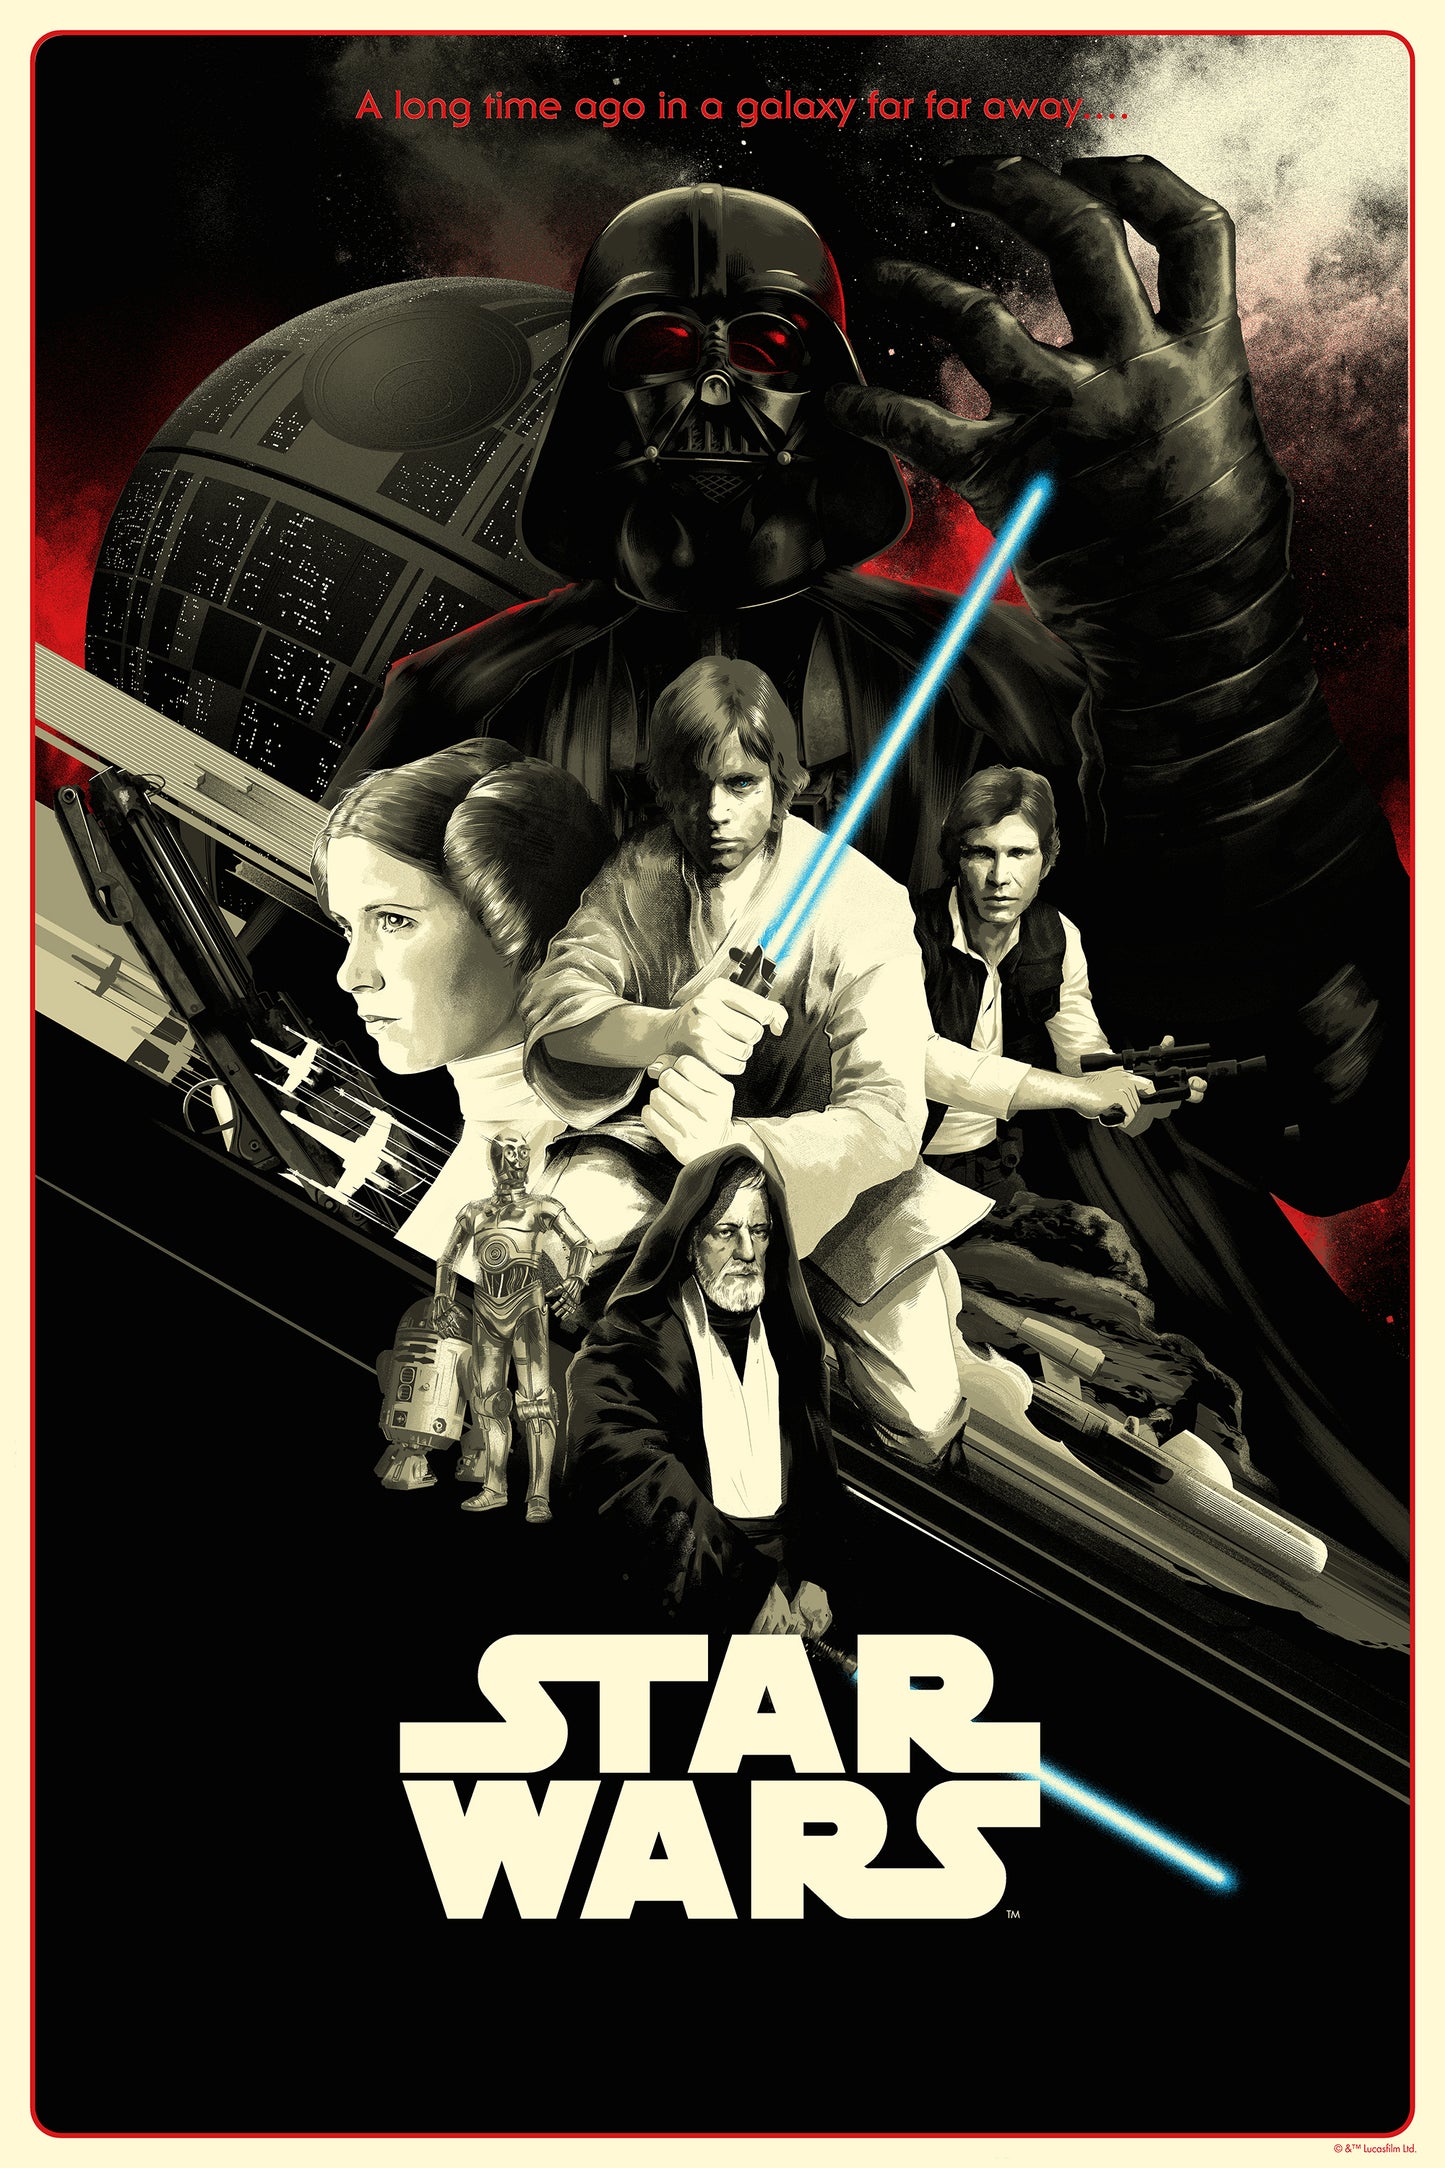 Matt Taylor "Star Wars: A New Hope" Variant